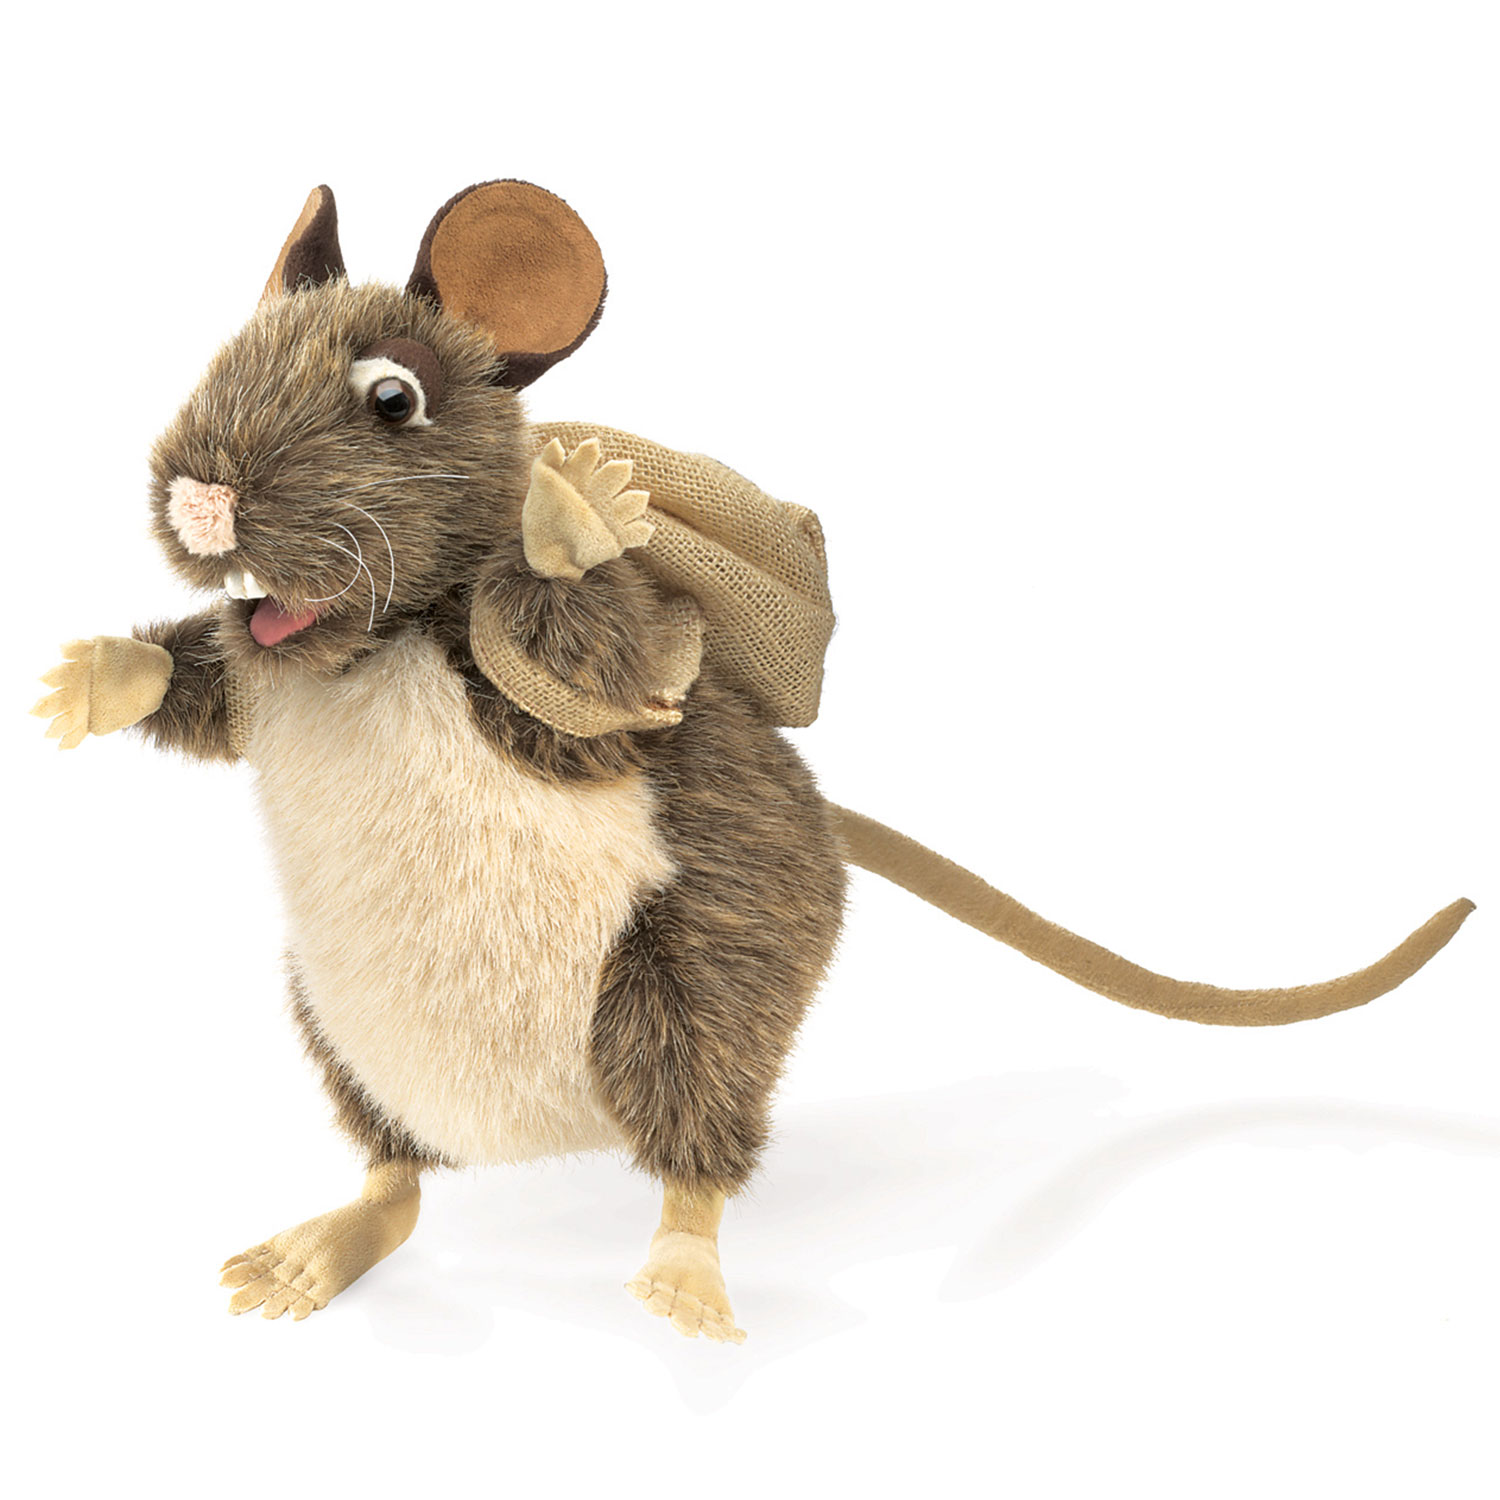 Ratte, sammelt gern / Pack Rat